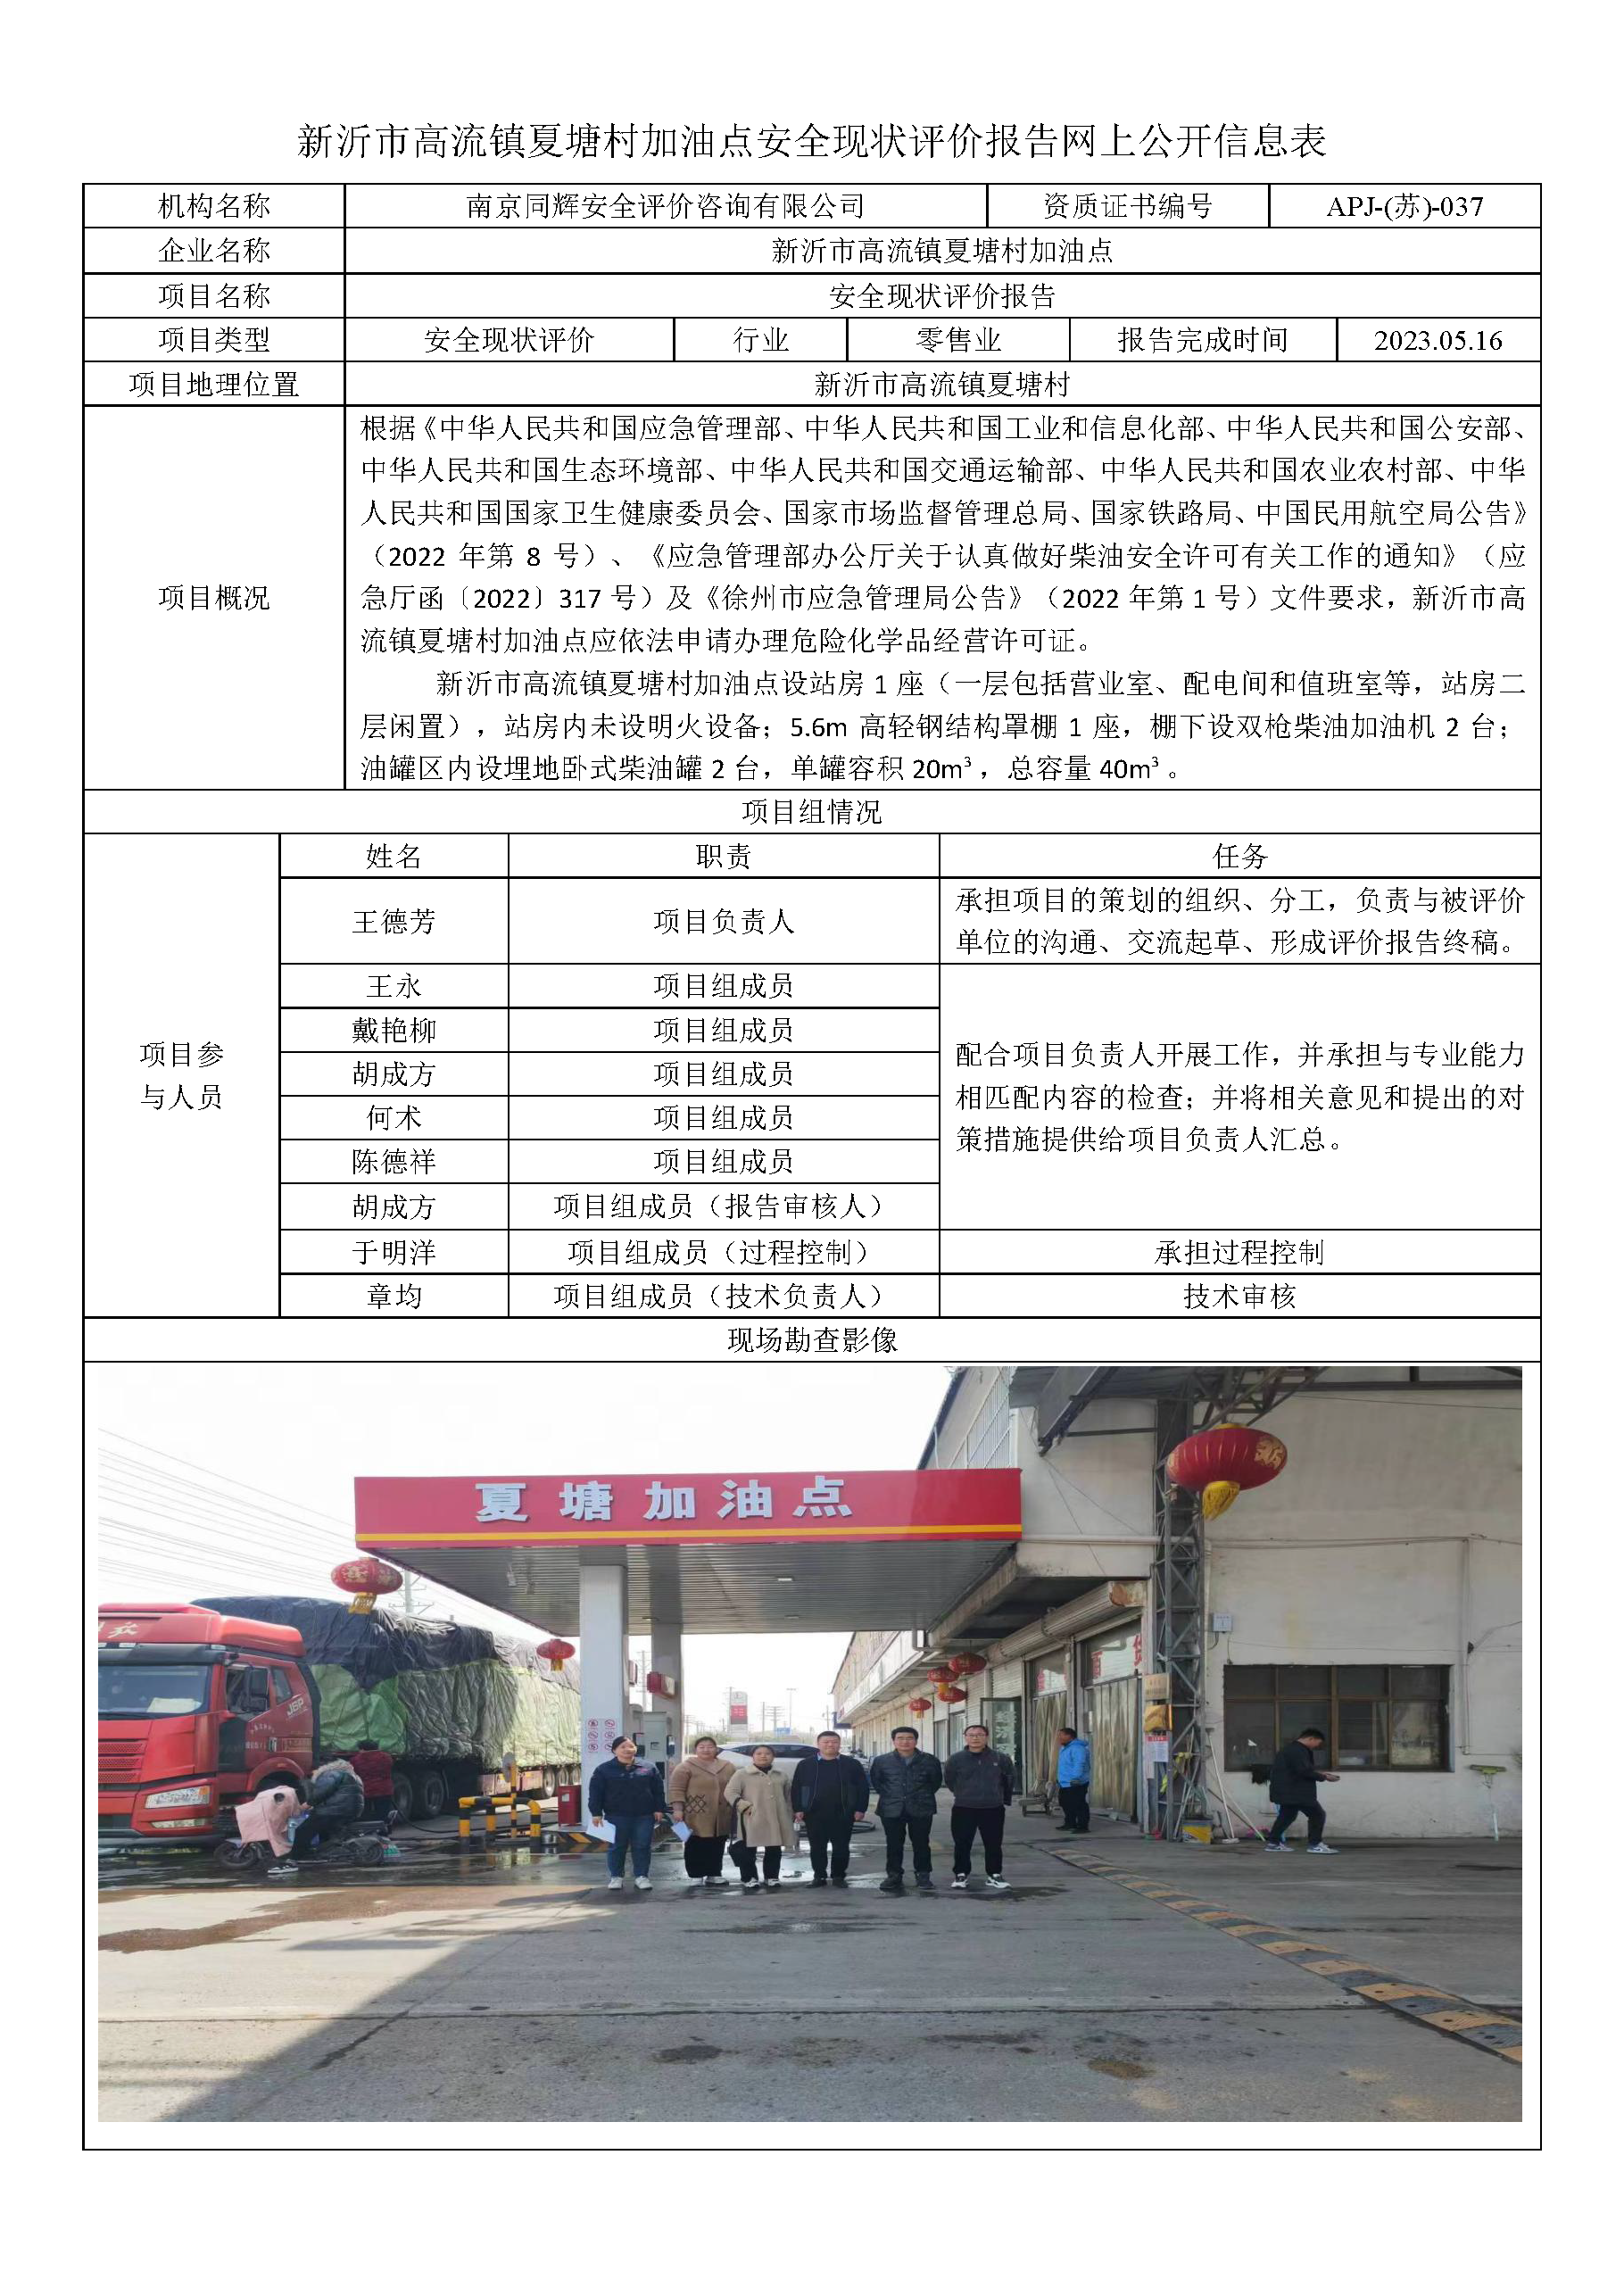 3新沂市高流镇夏塘村加油站安全现状评价报告网上公开信息表5.16.png